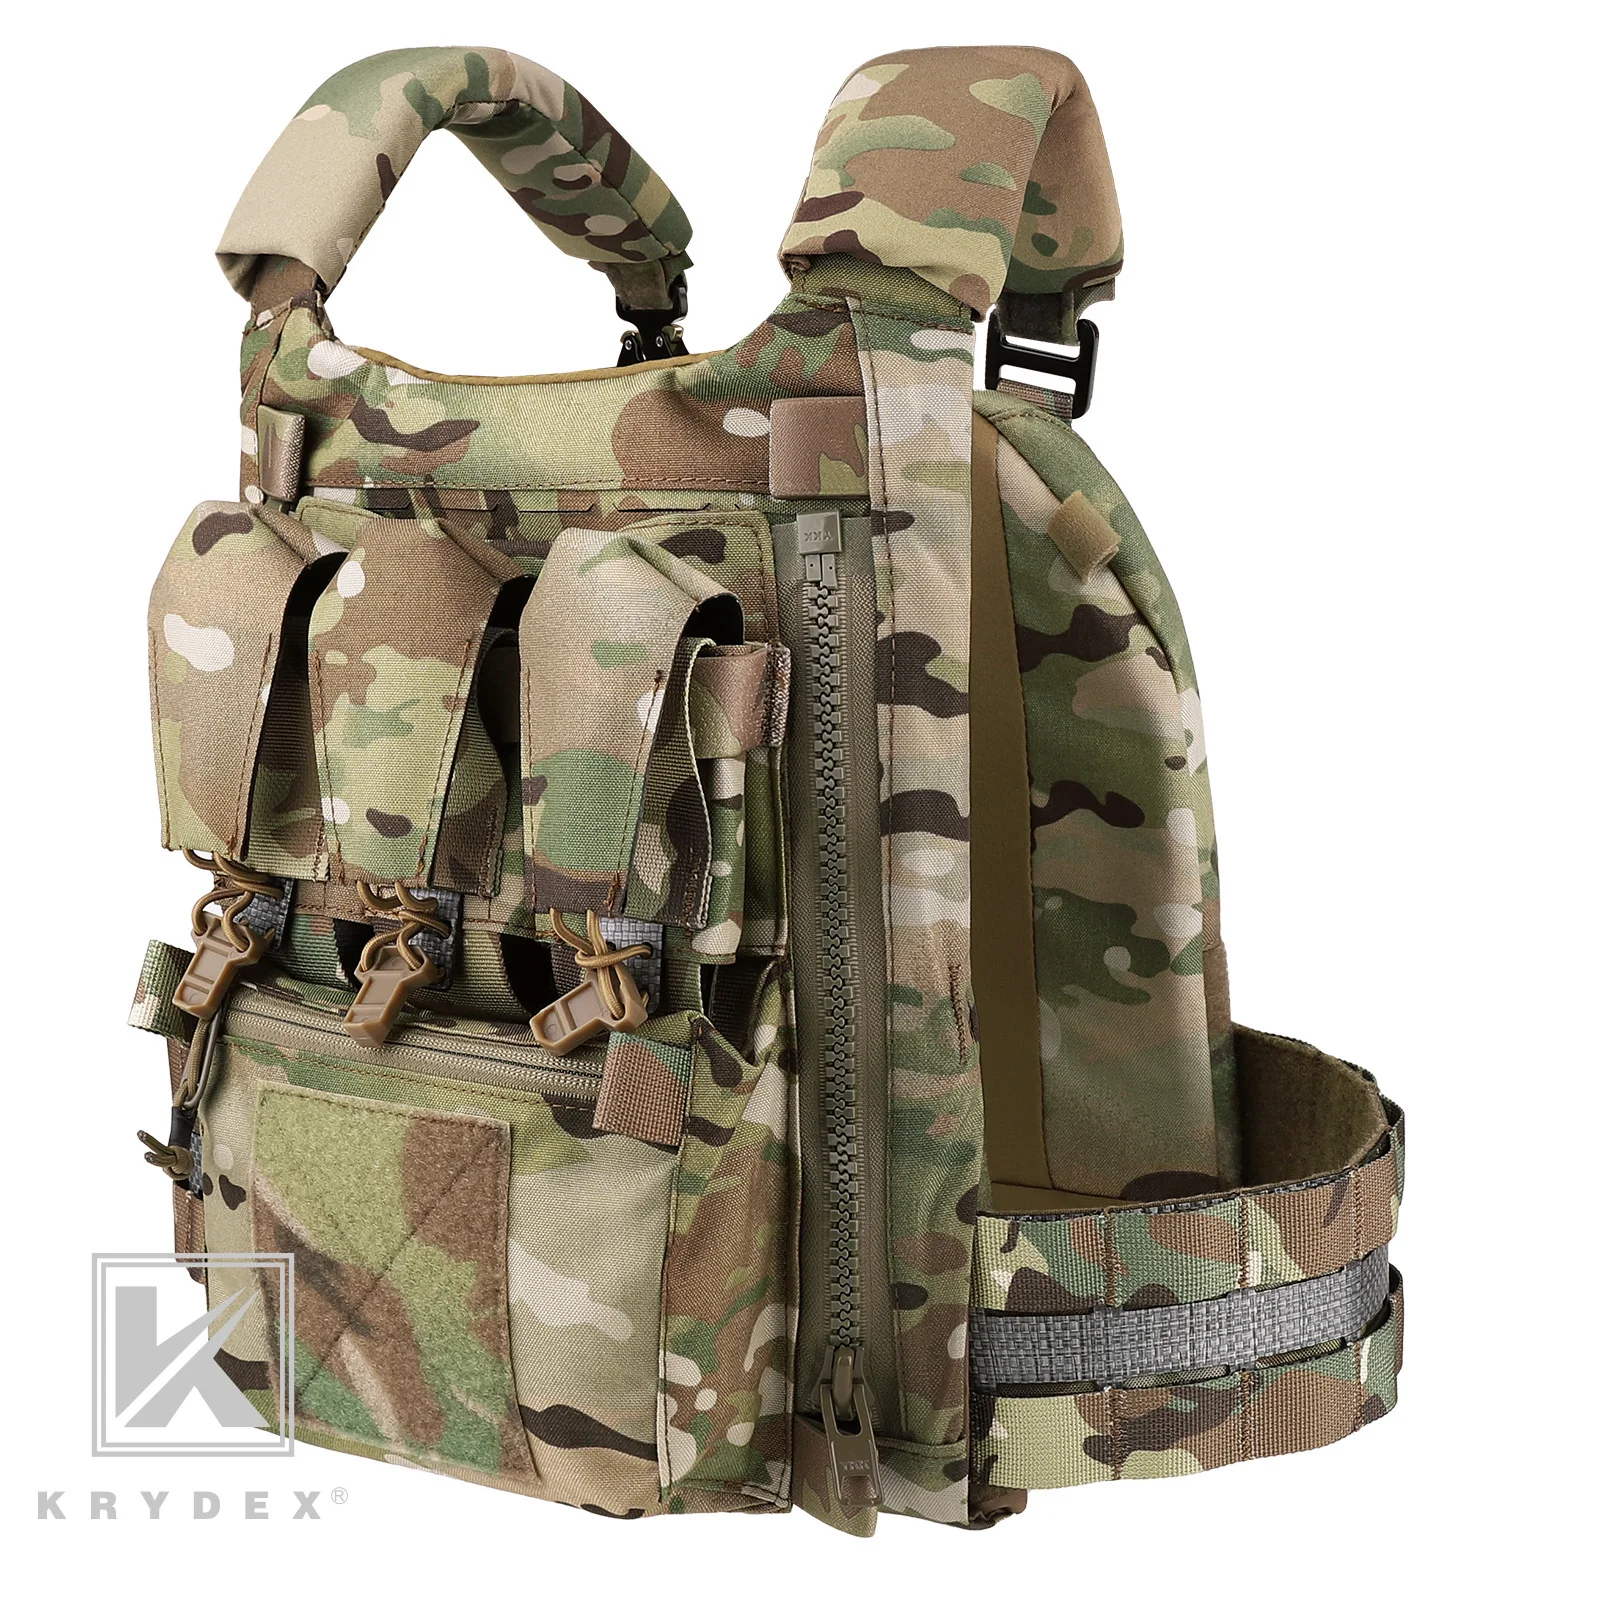 KRYDEX FCPC V5 Plate Carrier Front Mag Insert Pouch Backpack Cobra Buckle Tegris Cummerbund Tactical Vest Full Set Hunting Vest